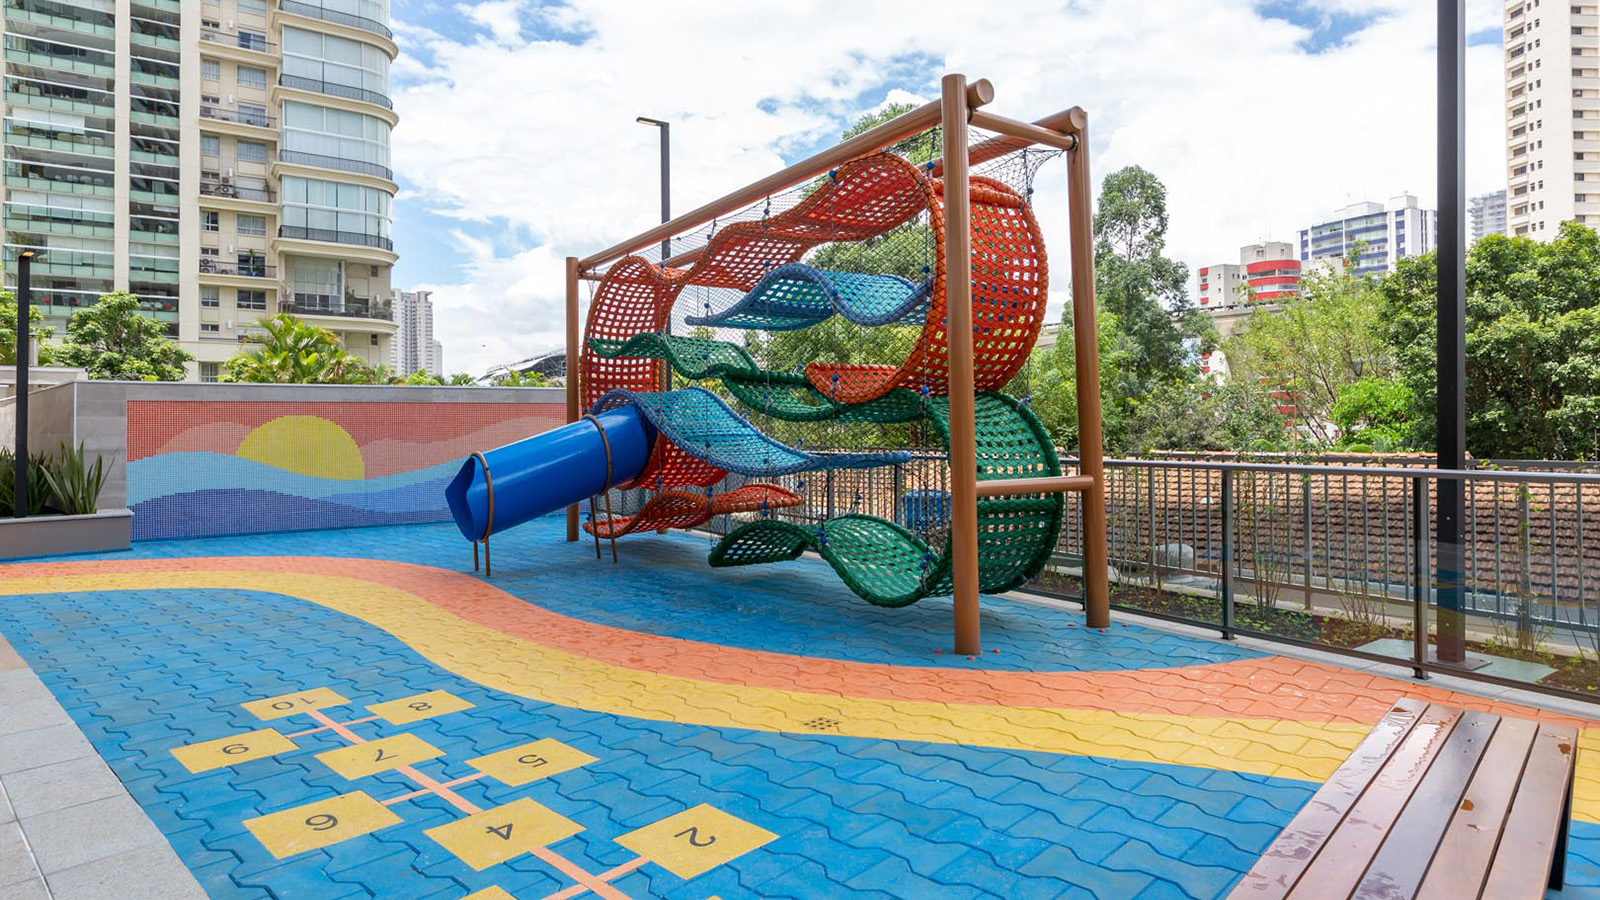 Imagem do playground